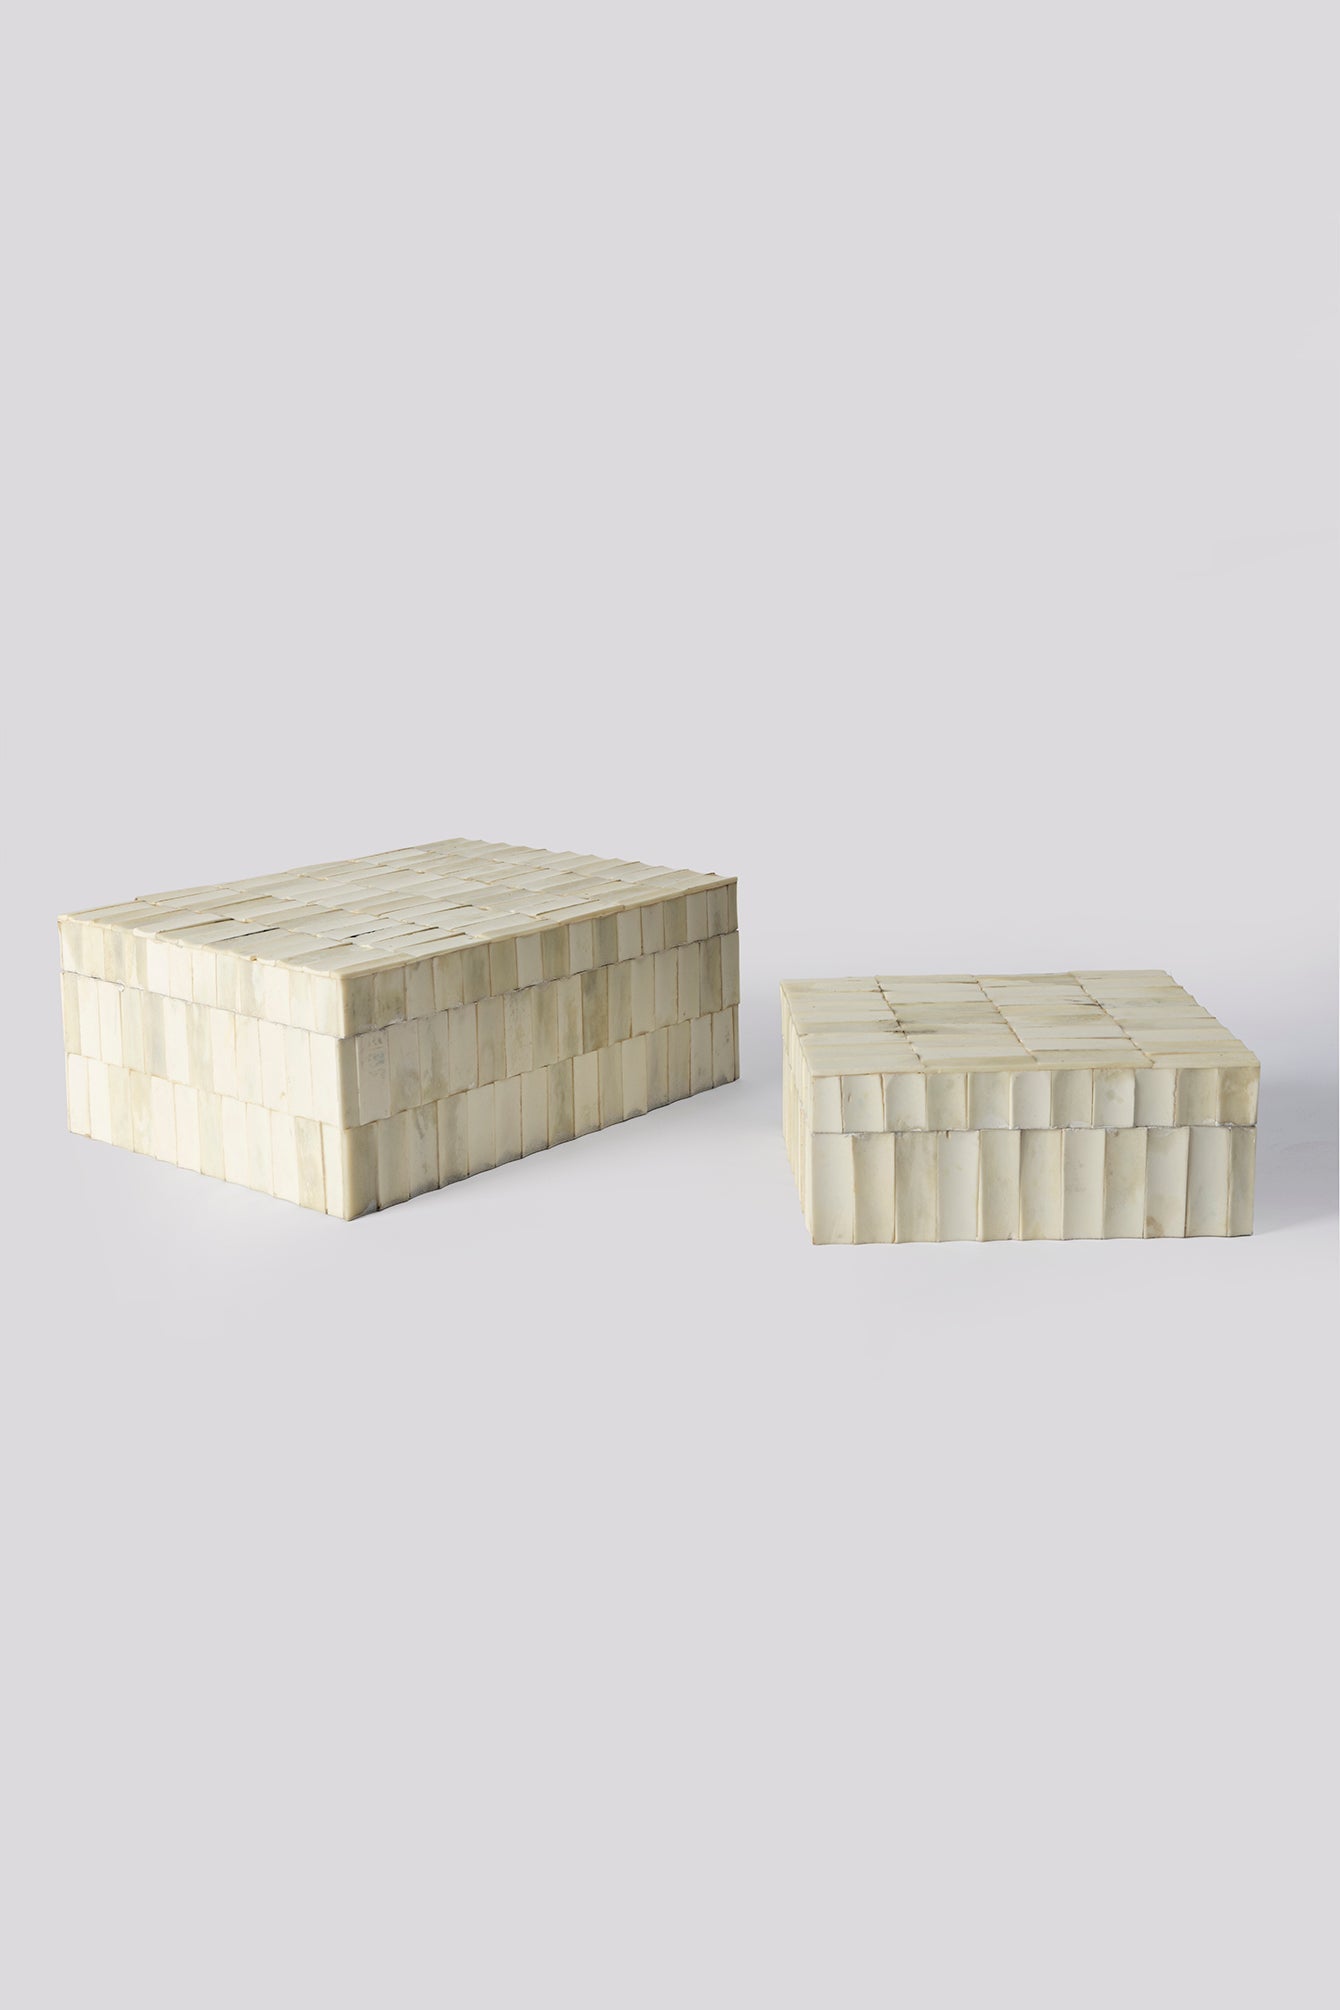 Tamsalu Wooden Bone Inlay Rectangular Box (Set of Two)